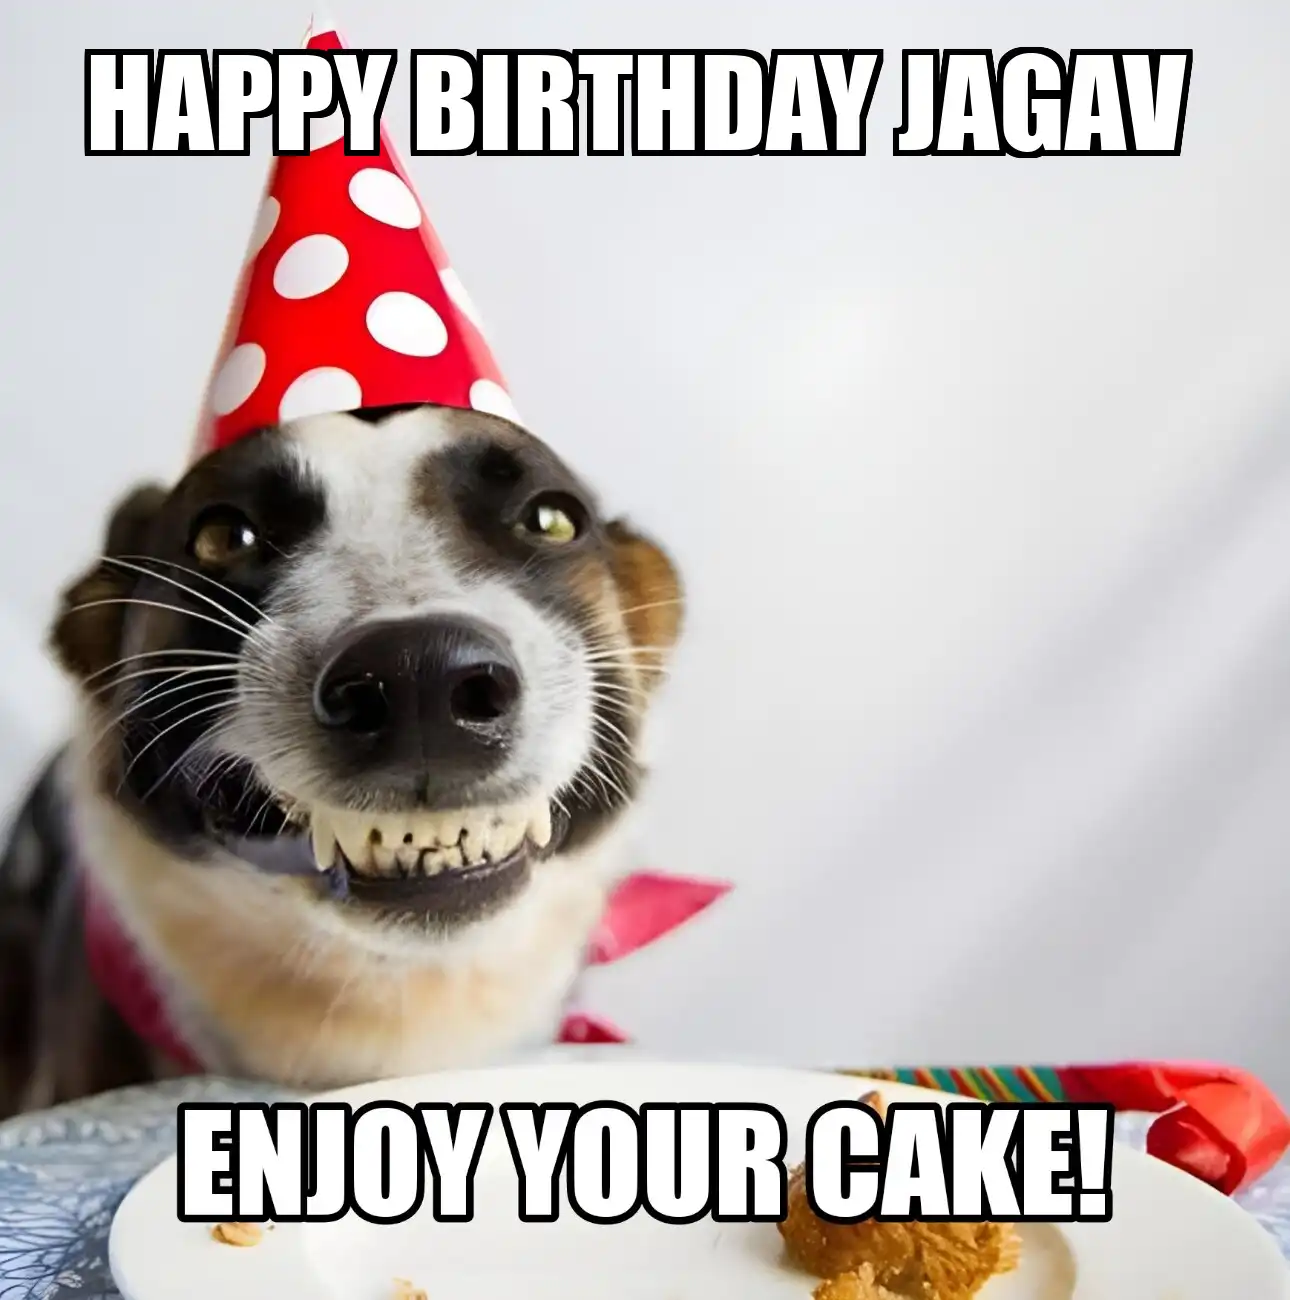 Happy Birthday Jagav Enjoy Your Cake Dog Meme